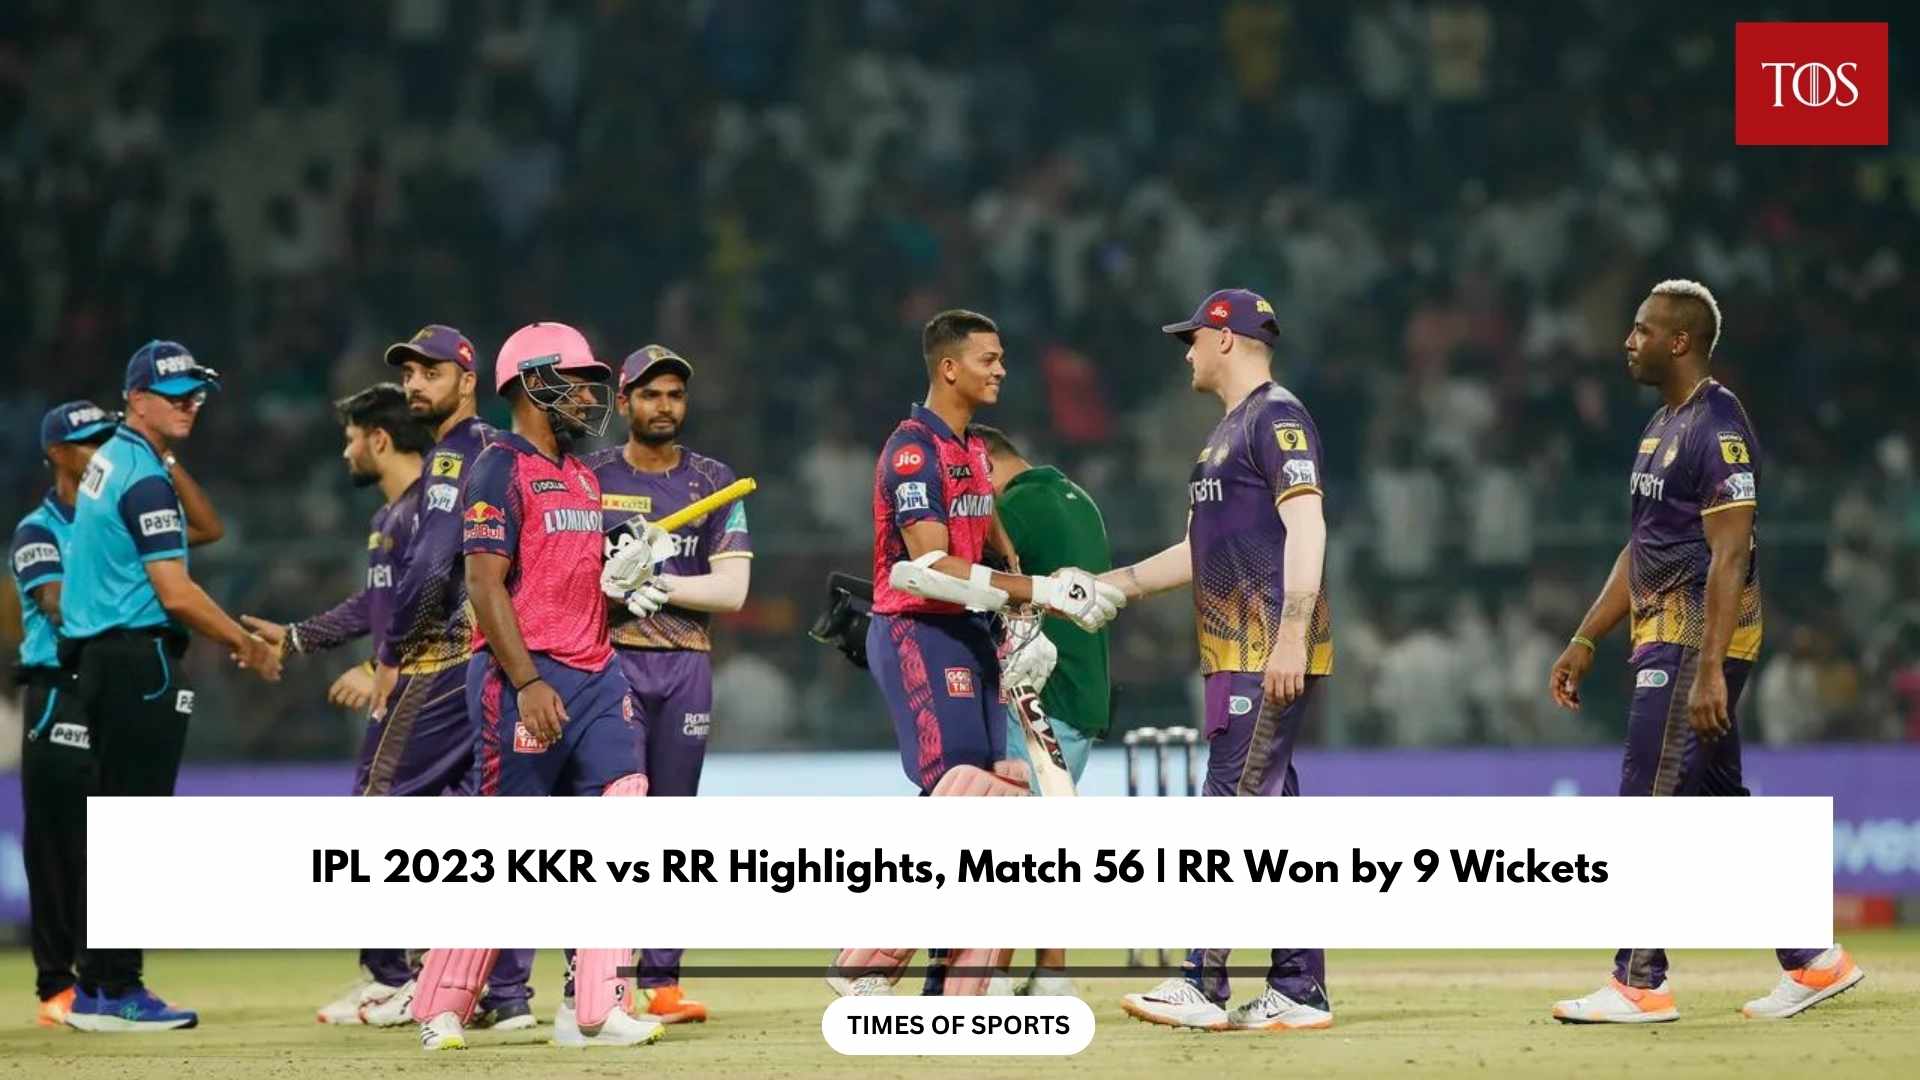 IPL 2023 KKR vs RR Highlights